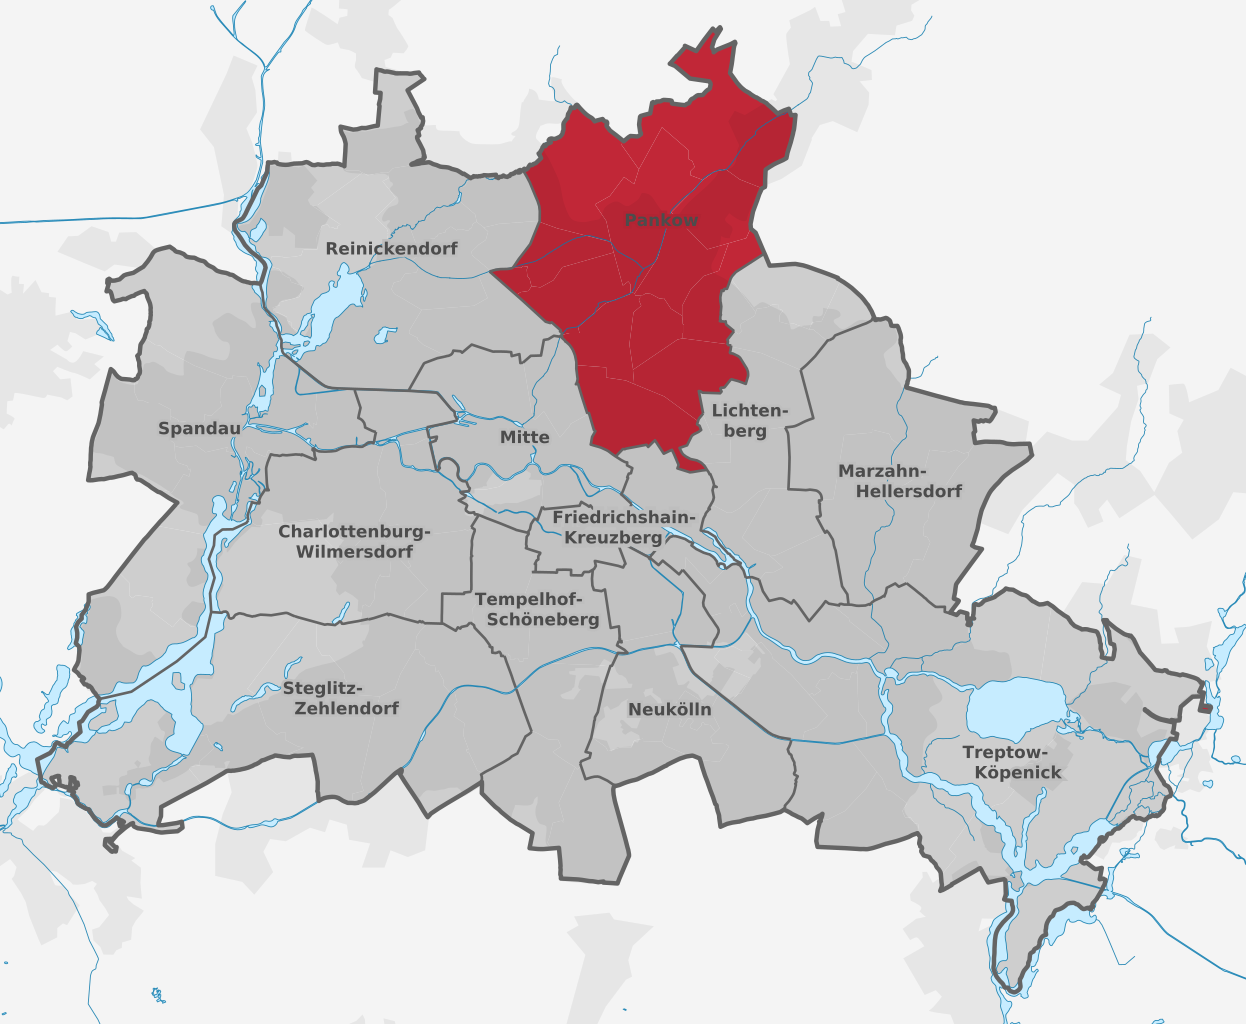 Bezirk Pankow - Quelle: https://de.m.wikipedia.org/wiki/Datei:Berlin_Bezirk_Pankow_(labeled).svg